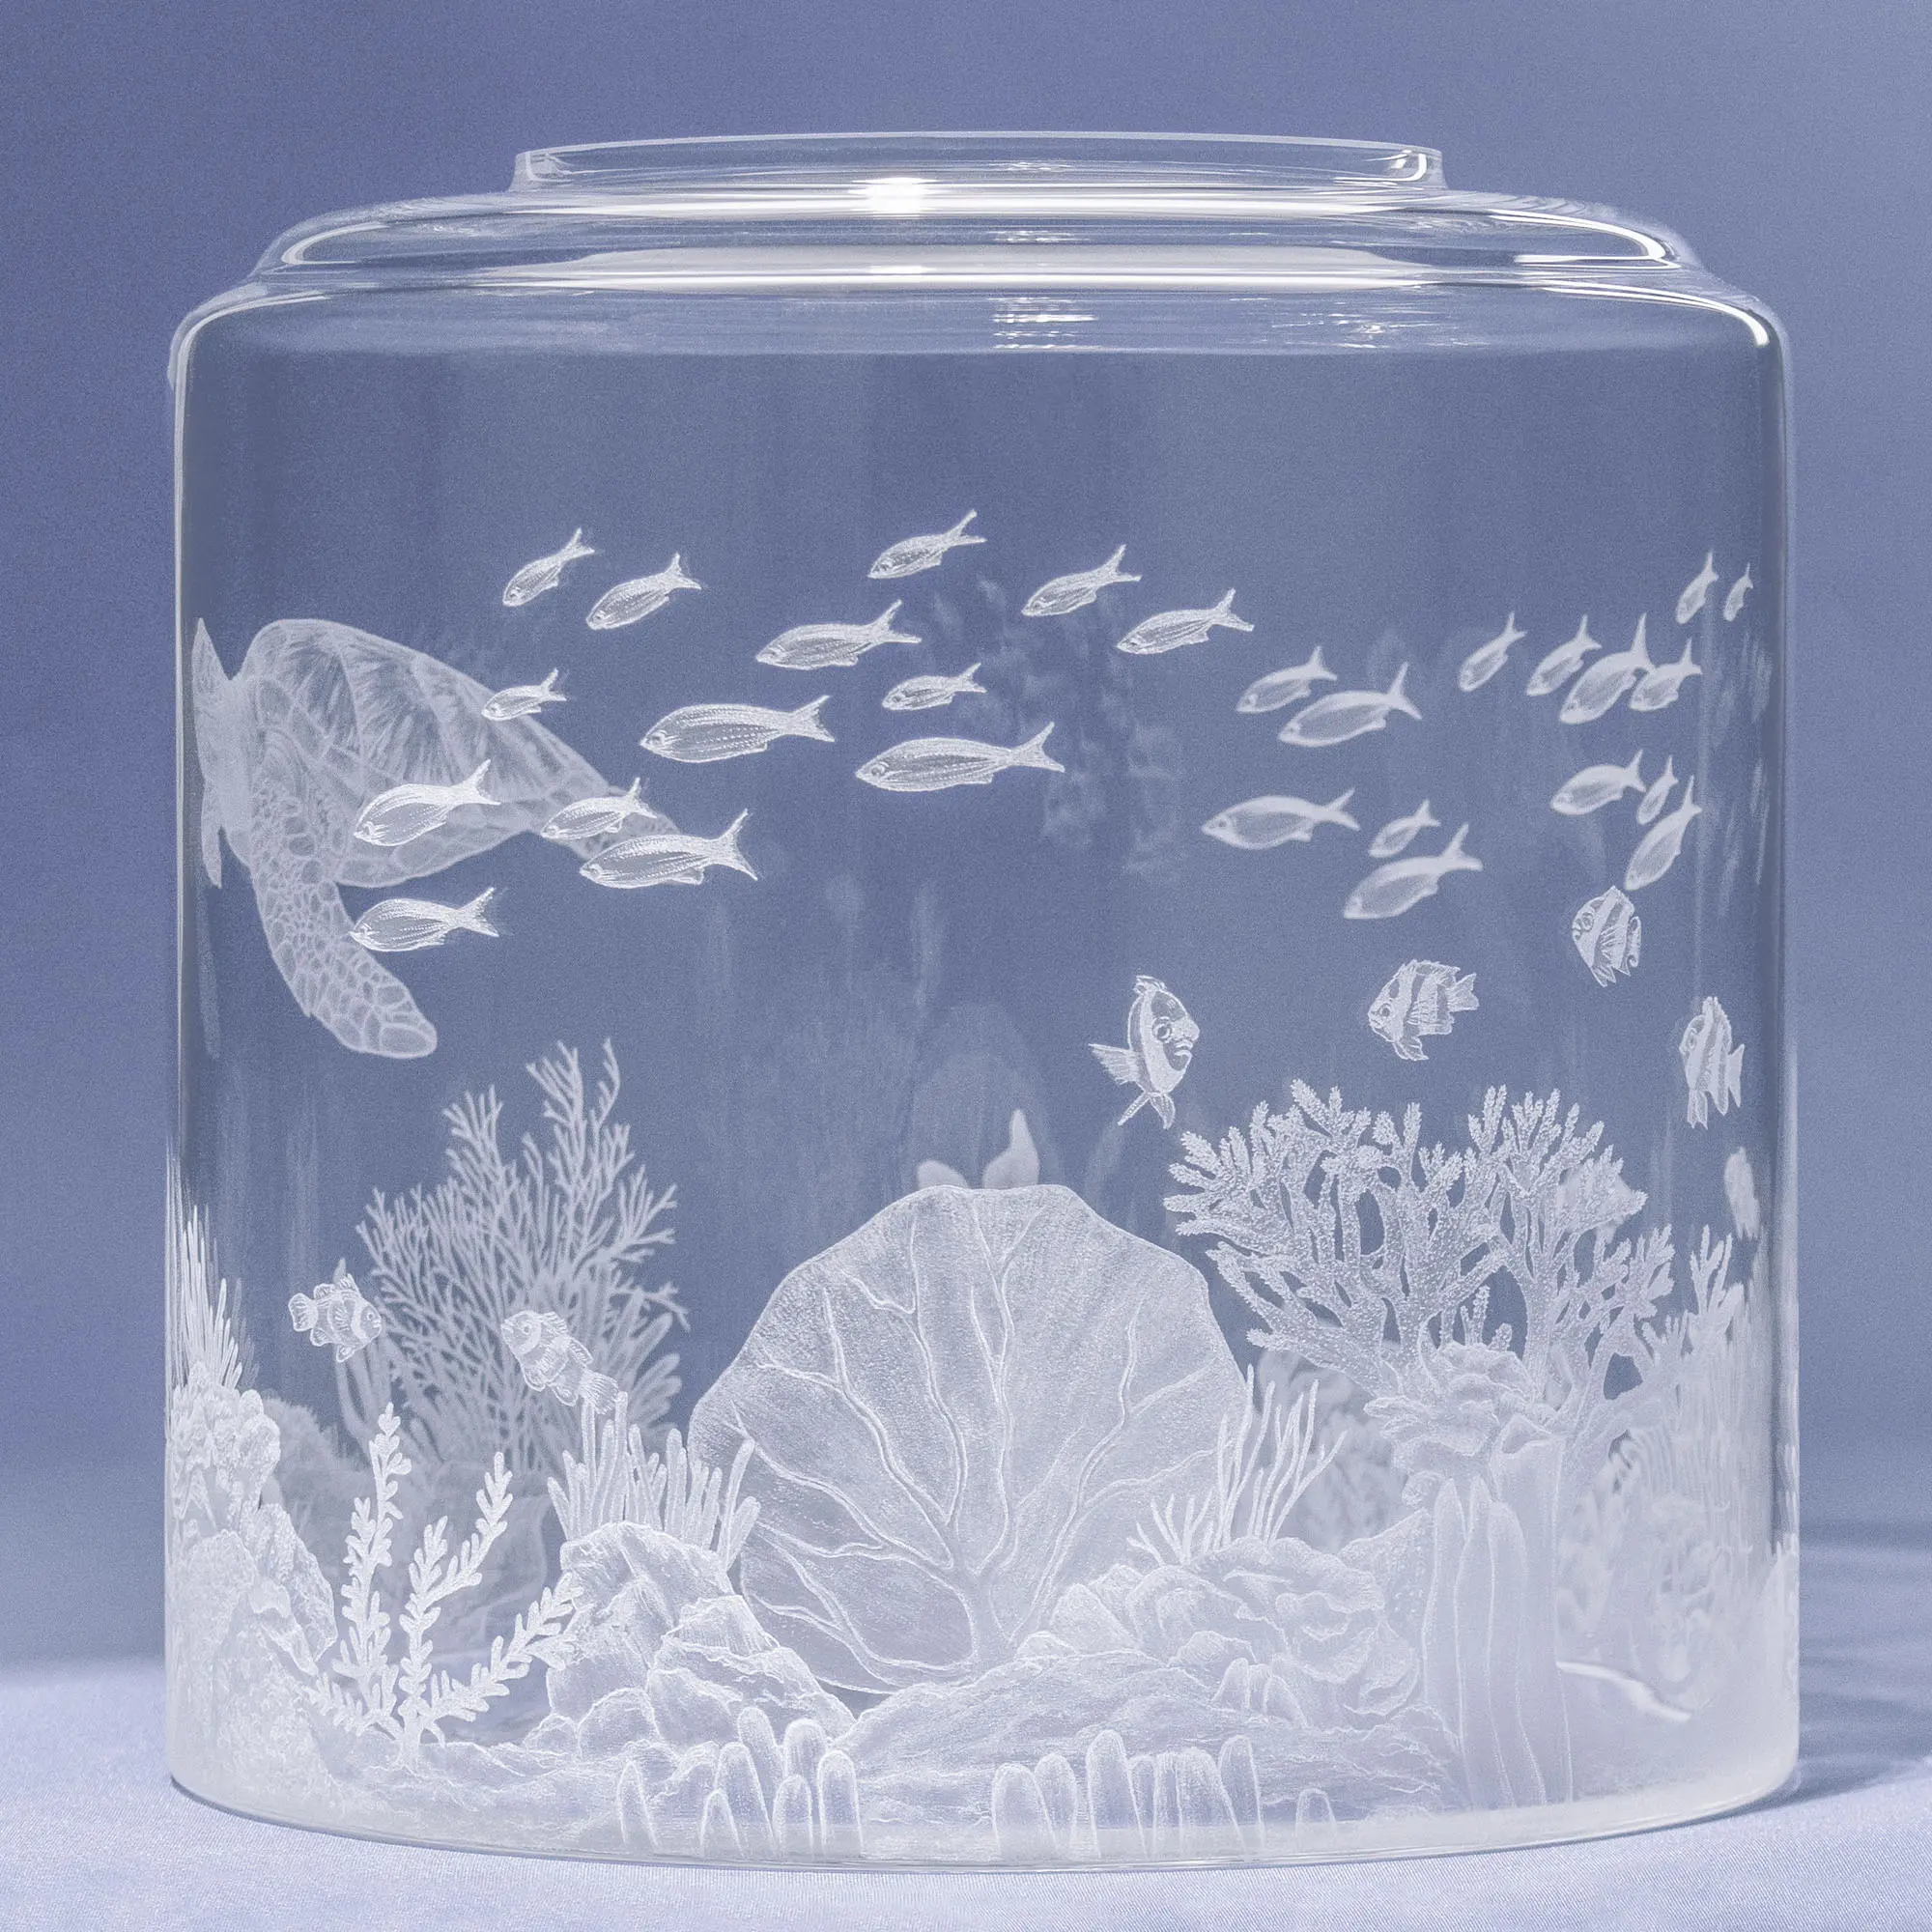 Auf dem Bild ist ein Wassertank für Acala Wasserfilter mit einer Handgravur die ein Riff mit Fischen,Korallen und einer schönen Schildkröte dargestellt wird,von Hinten